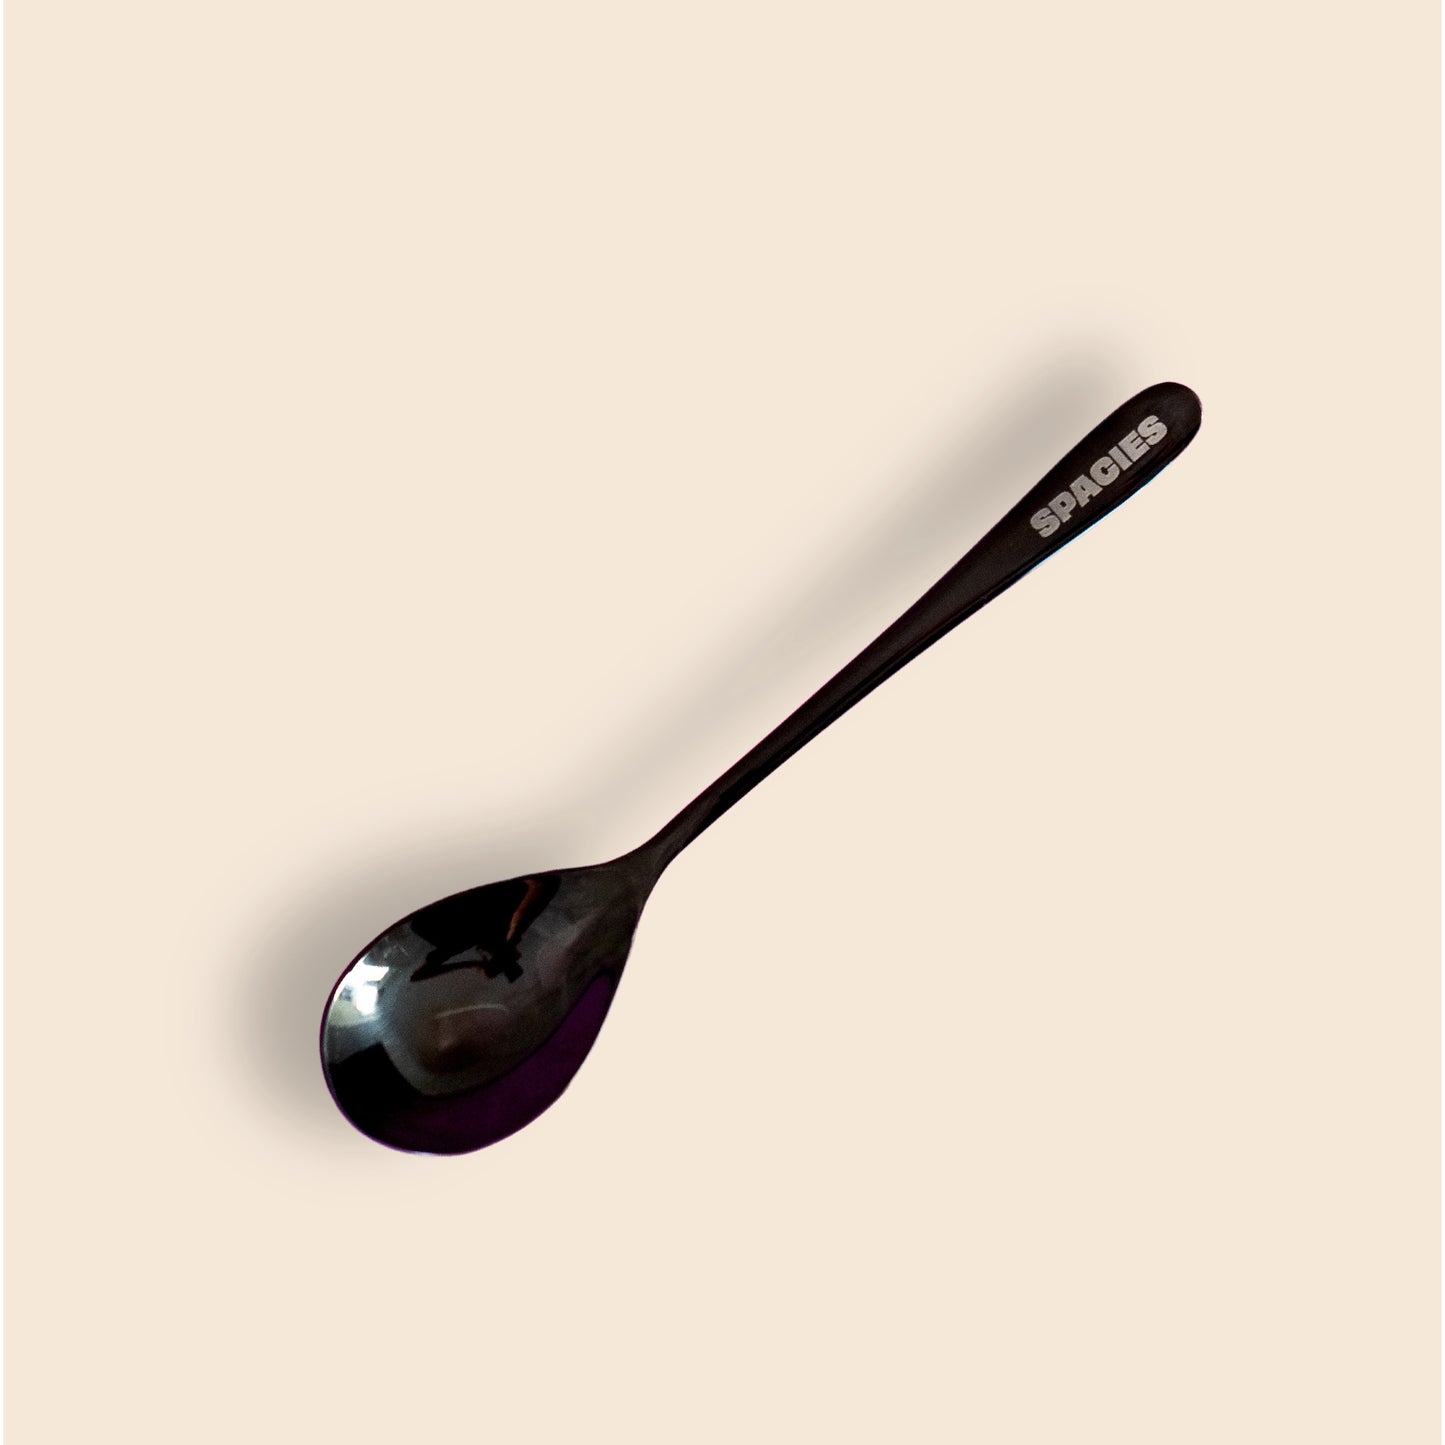 Spacies Bowl & Spoon: Orbital Black